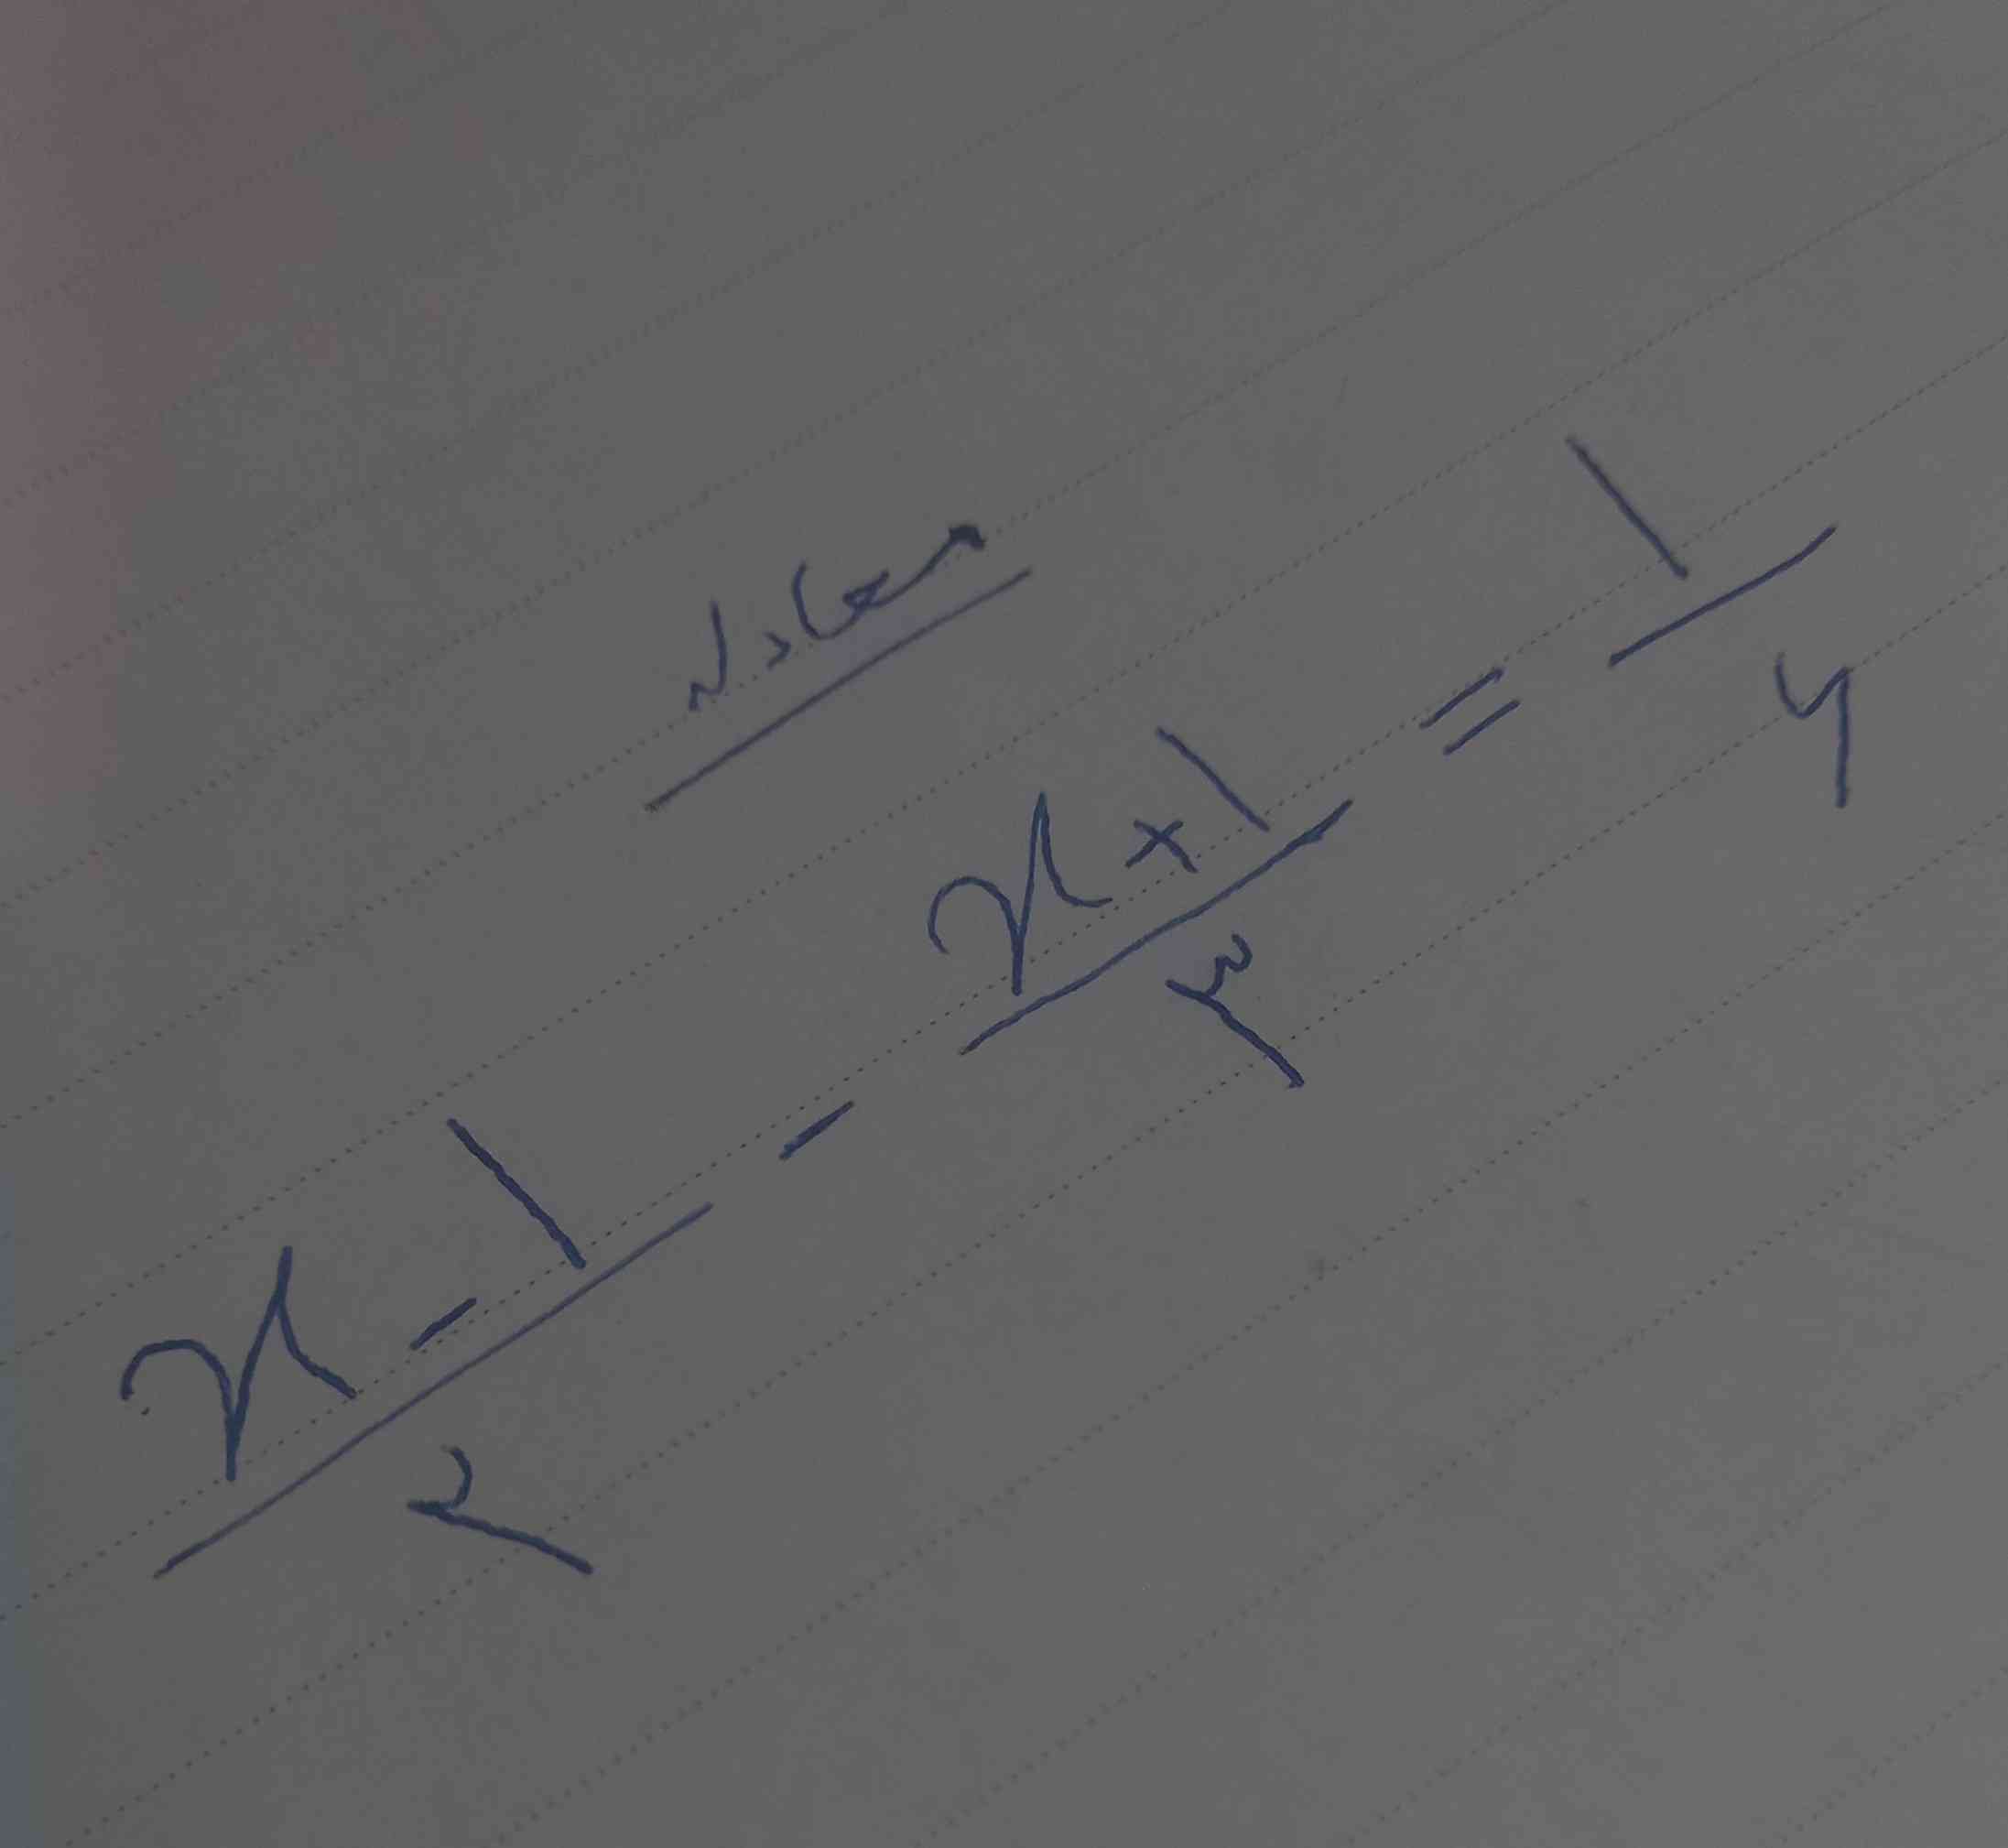 خیلیا تو کلاس اینو اشتب نوشتن 
اگه کسی با توضیح جواب بده تاج میدم
اینکه X مساویه با چند؟ 